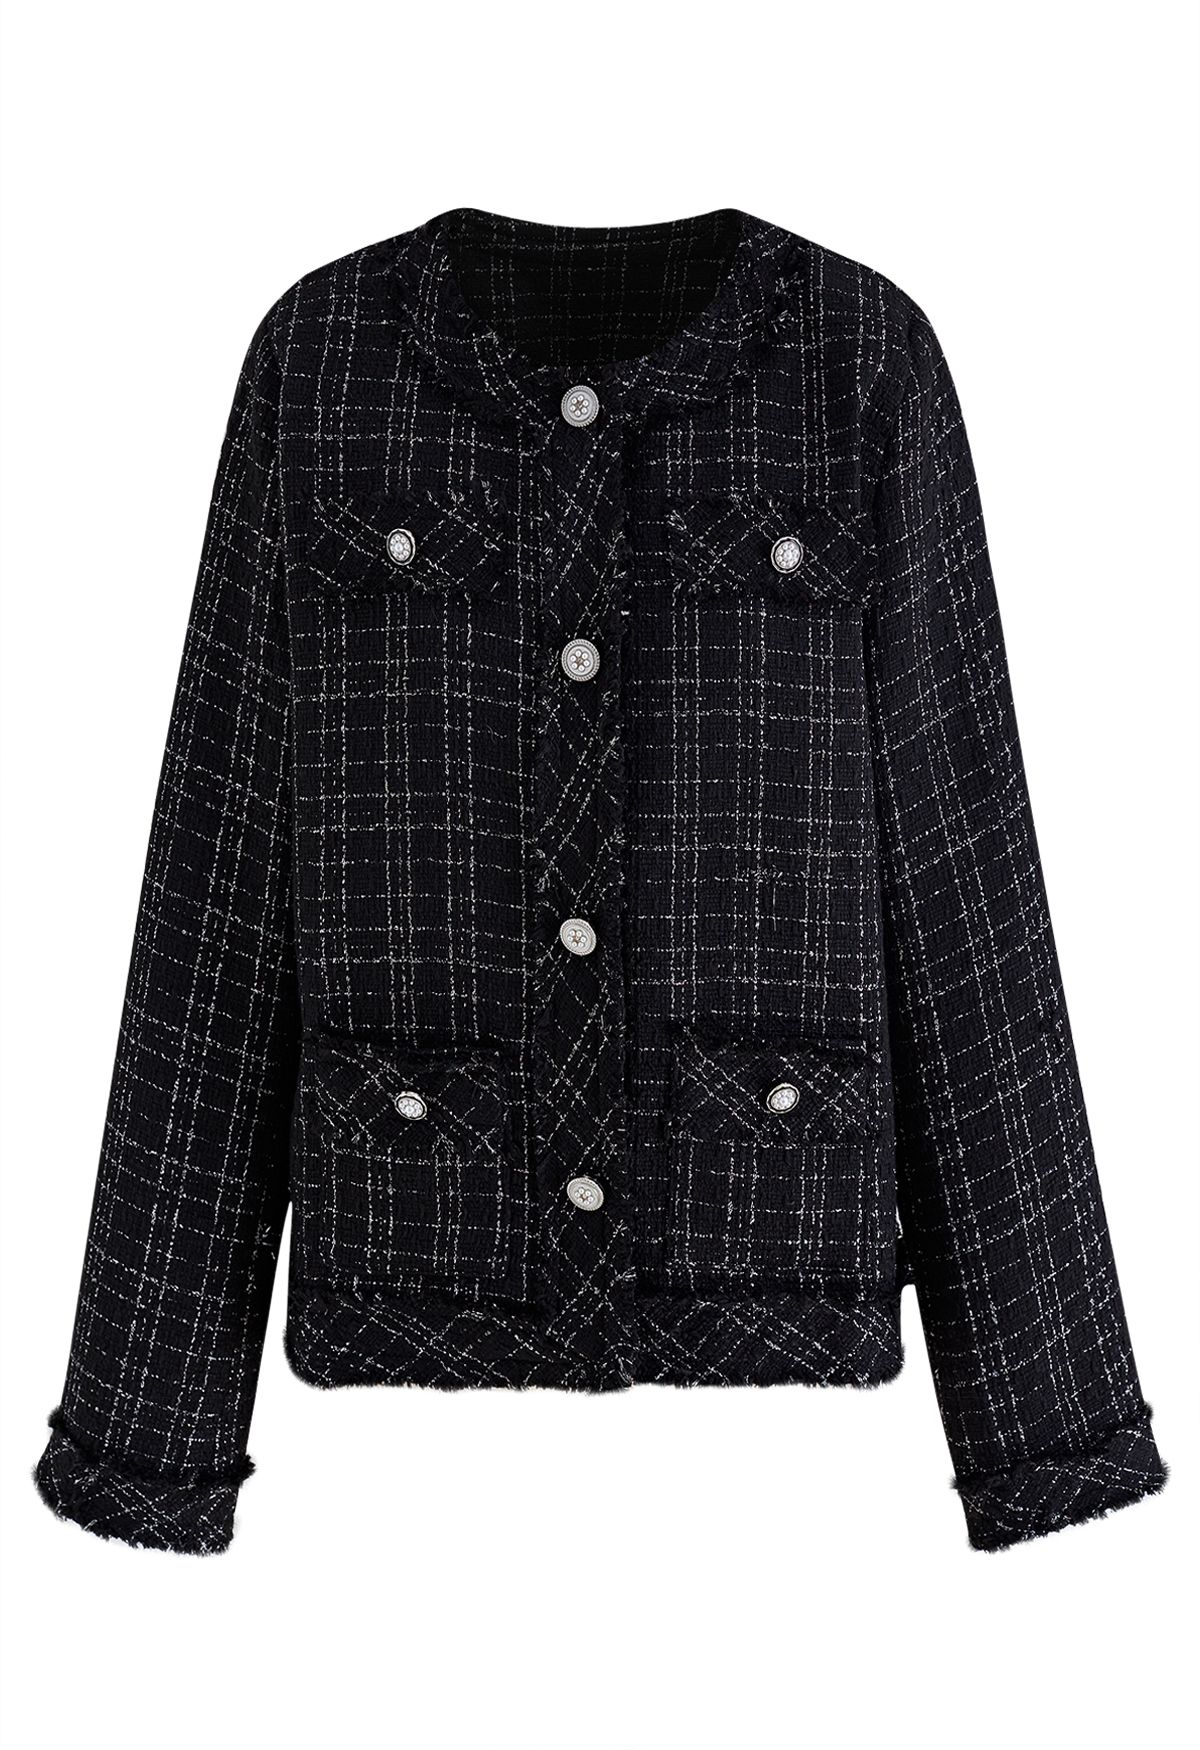 Nobby Collarless Grid Tweed Jacket in Black - Retro, Indie and Unique ...